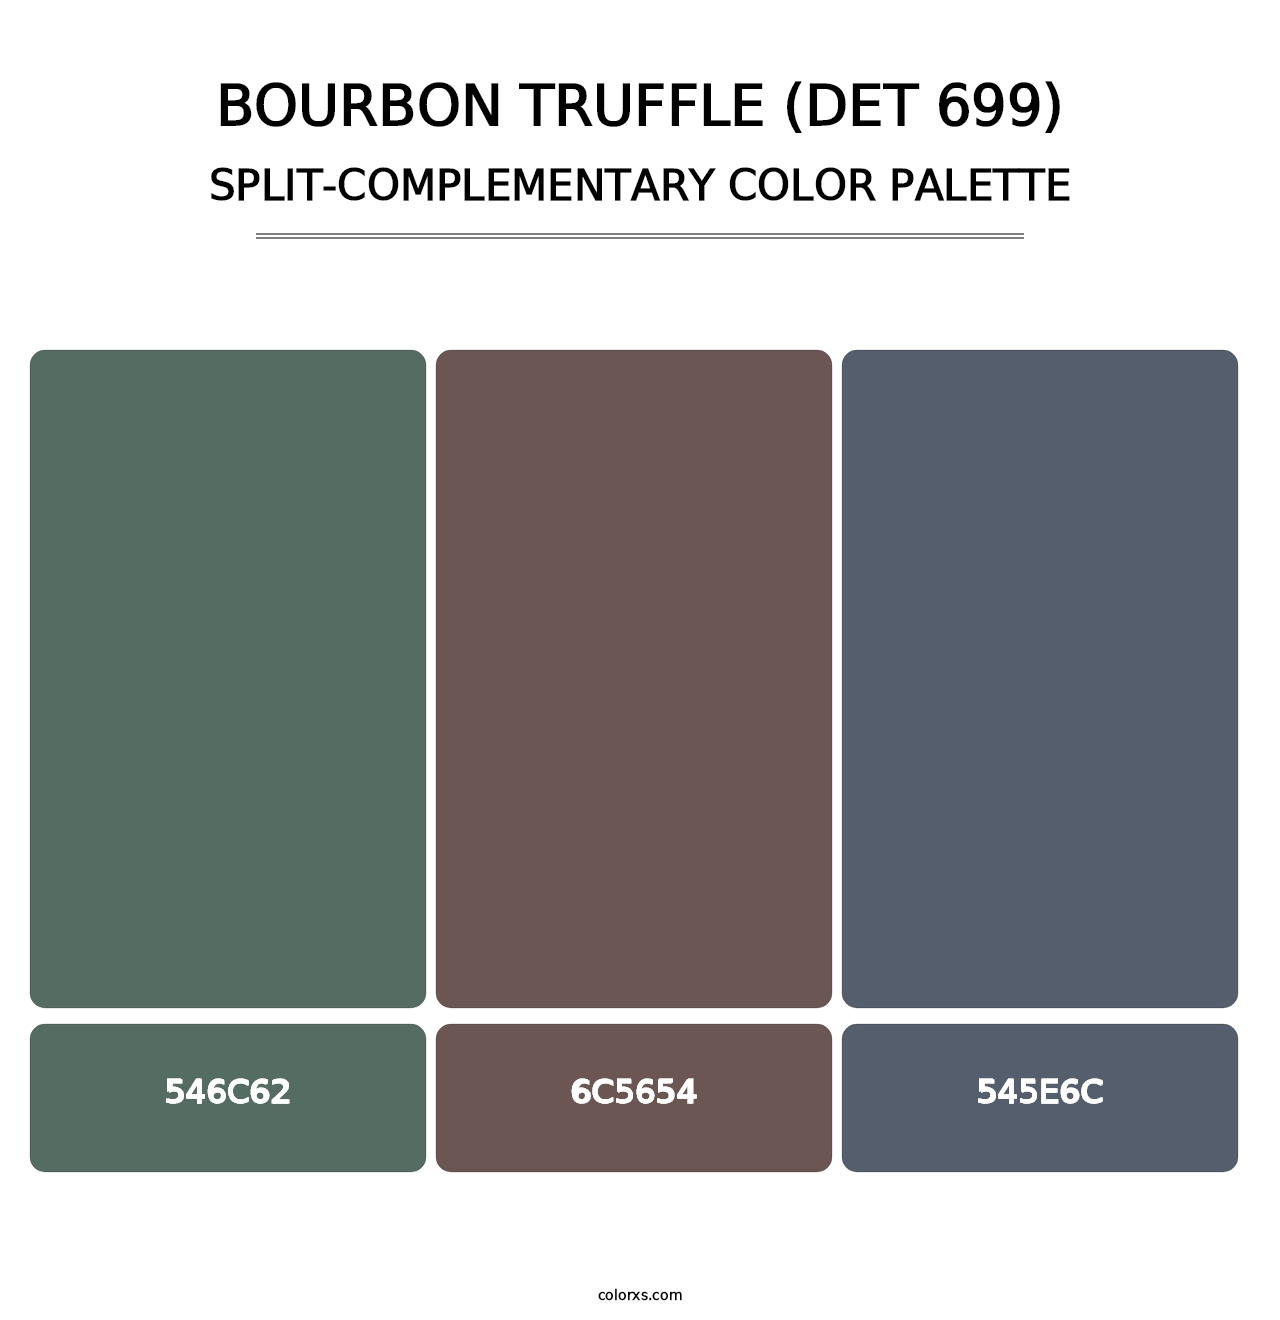 Bourbon Truffle (DET 699) - Split-Complementary Color Palette